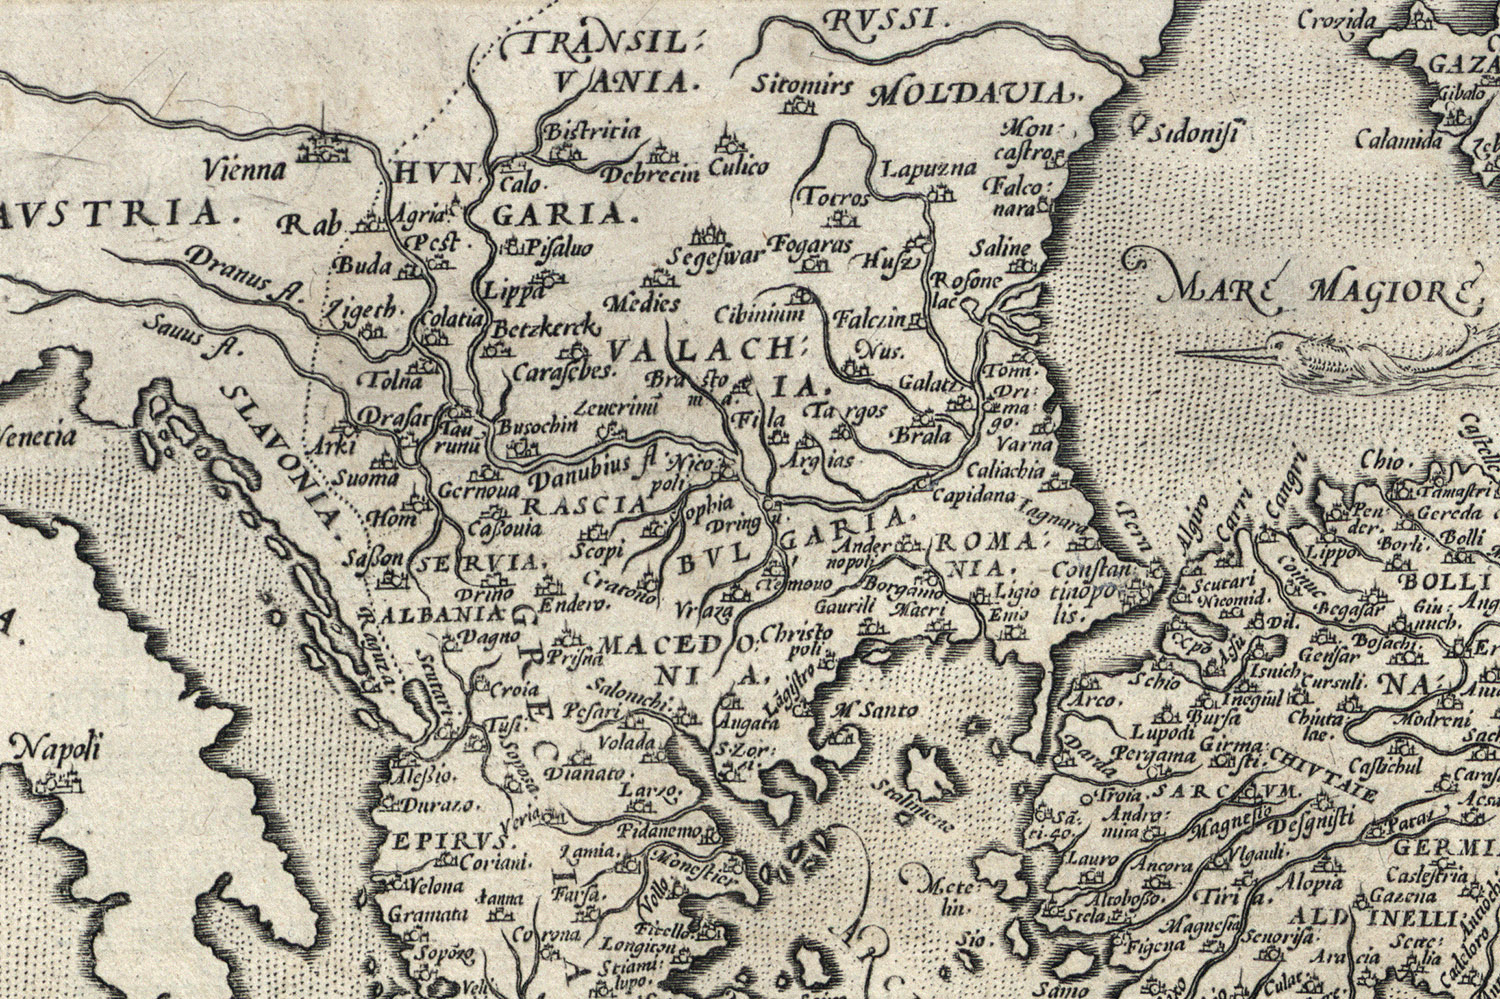 Bulgária térképe a XVI. század második feléből